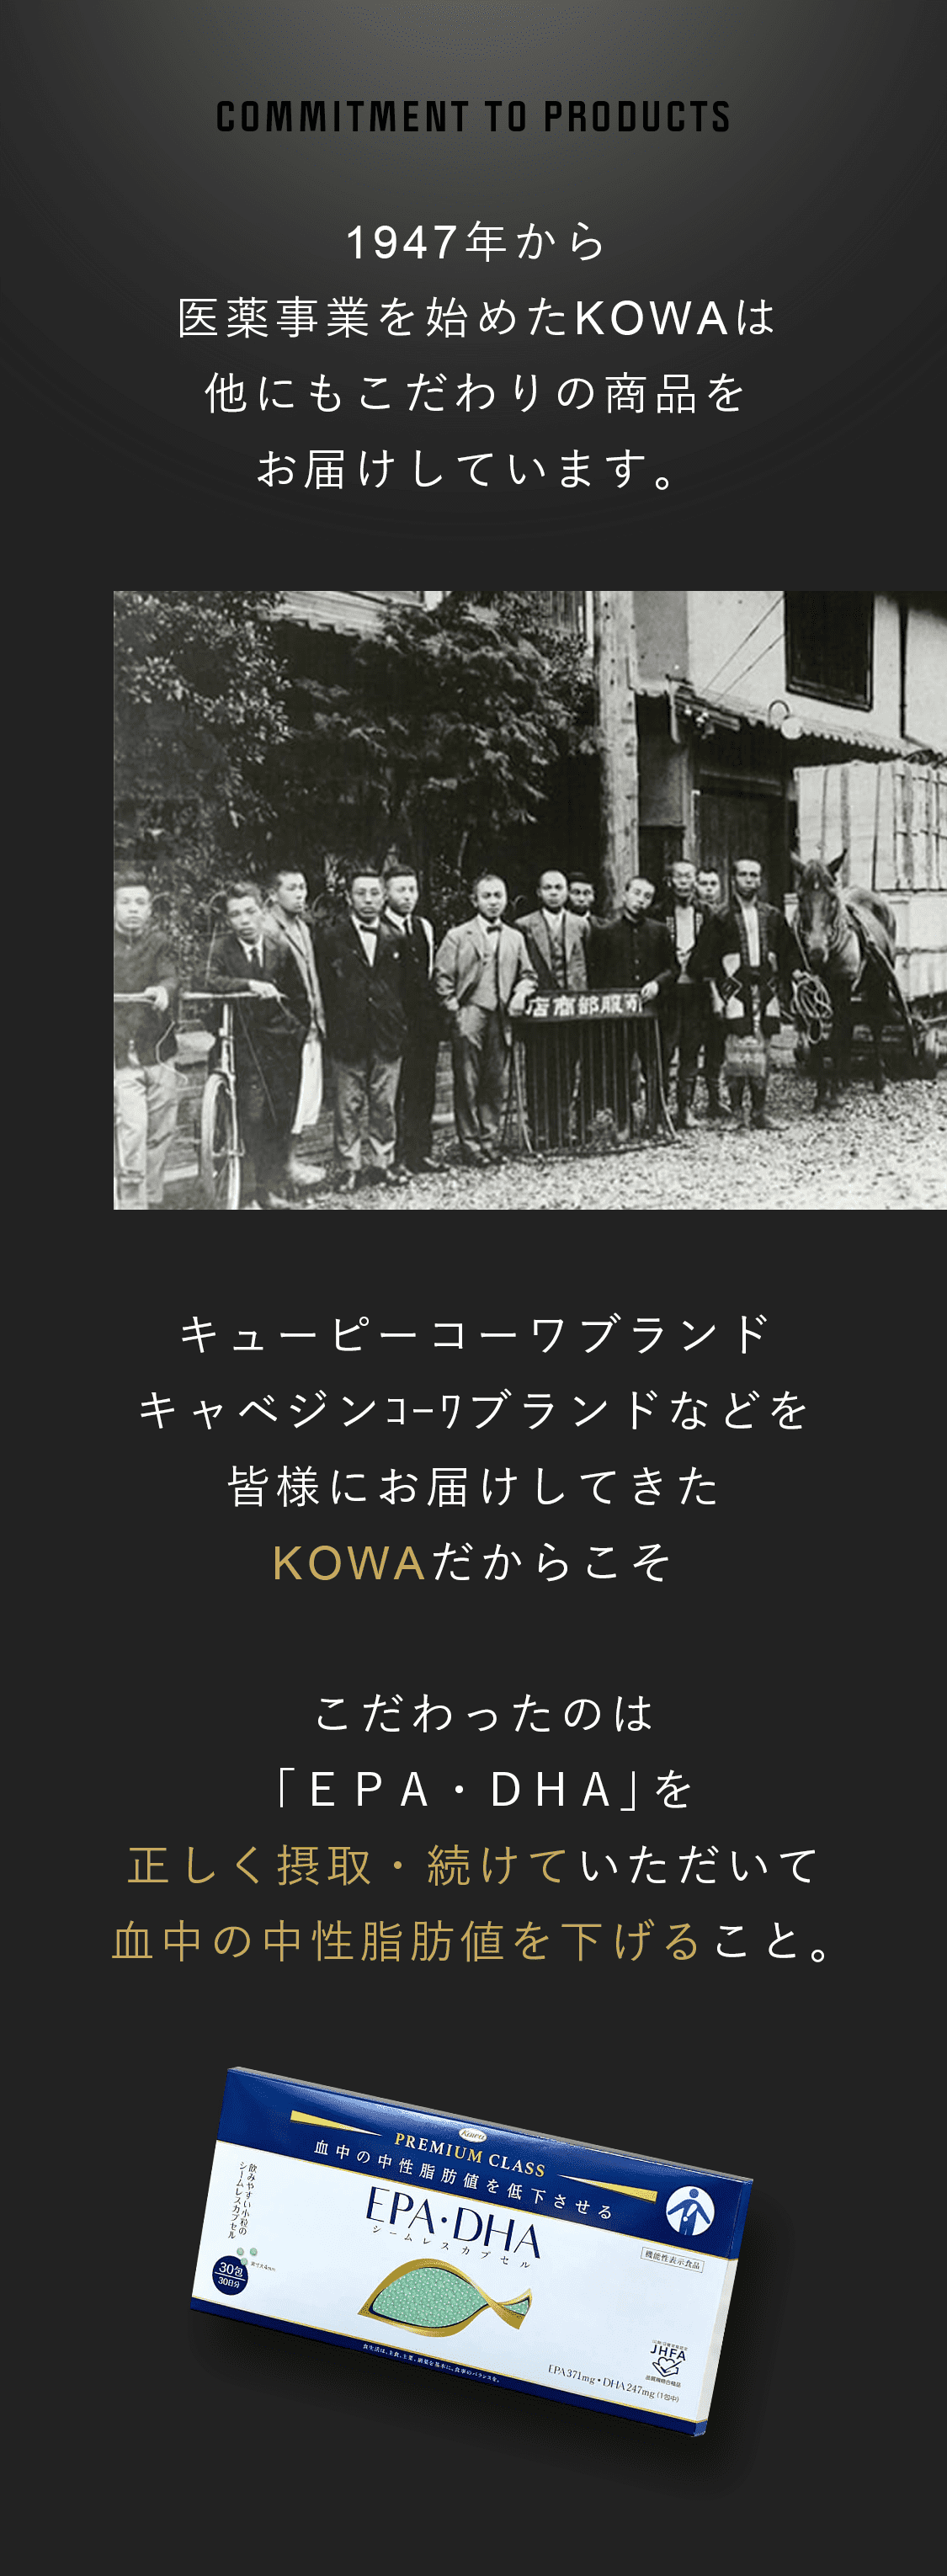 1947年から医療事業を始めたKOWAは他にもこだわりの商品をお届けしています。